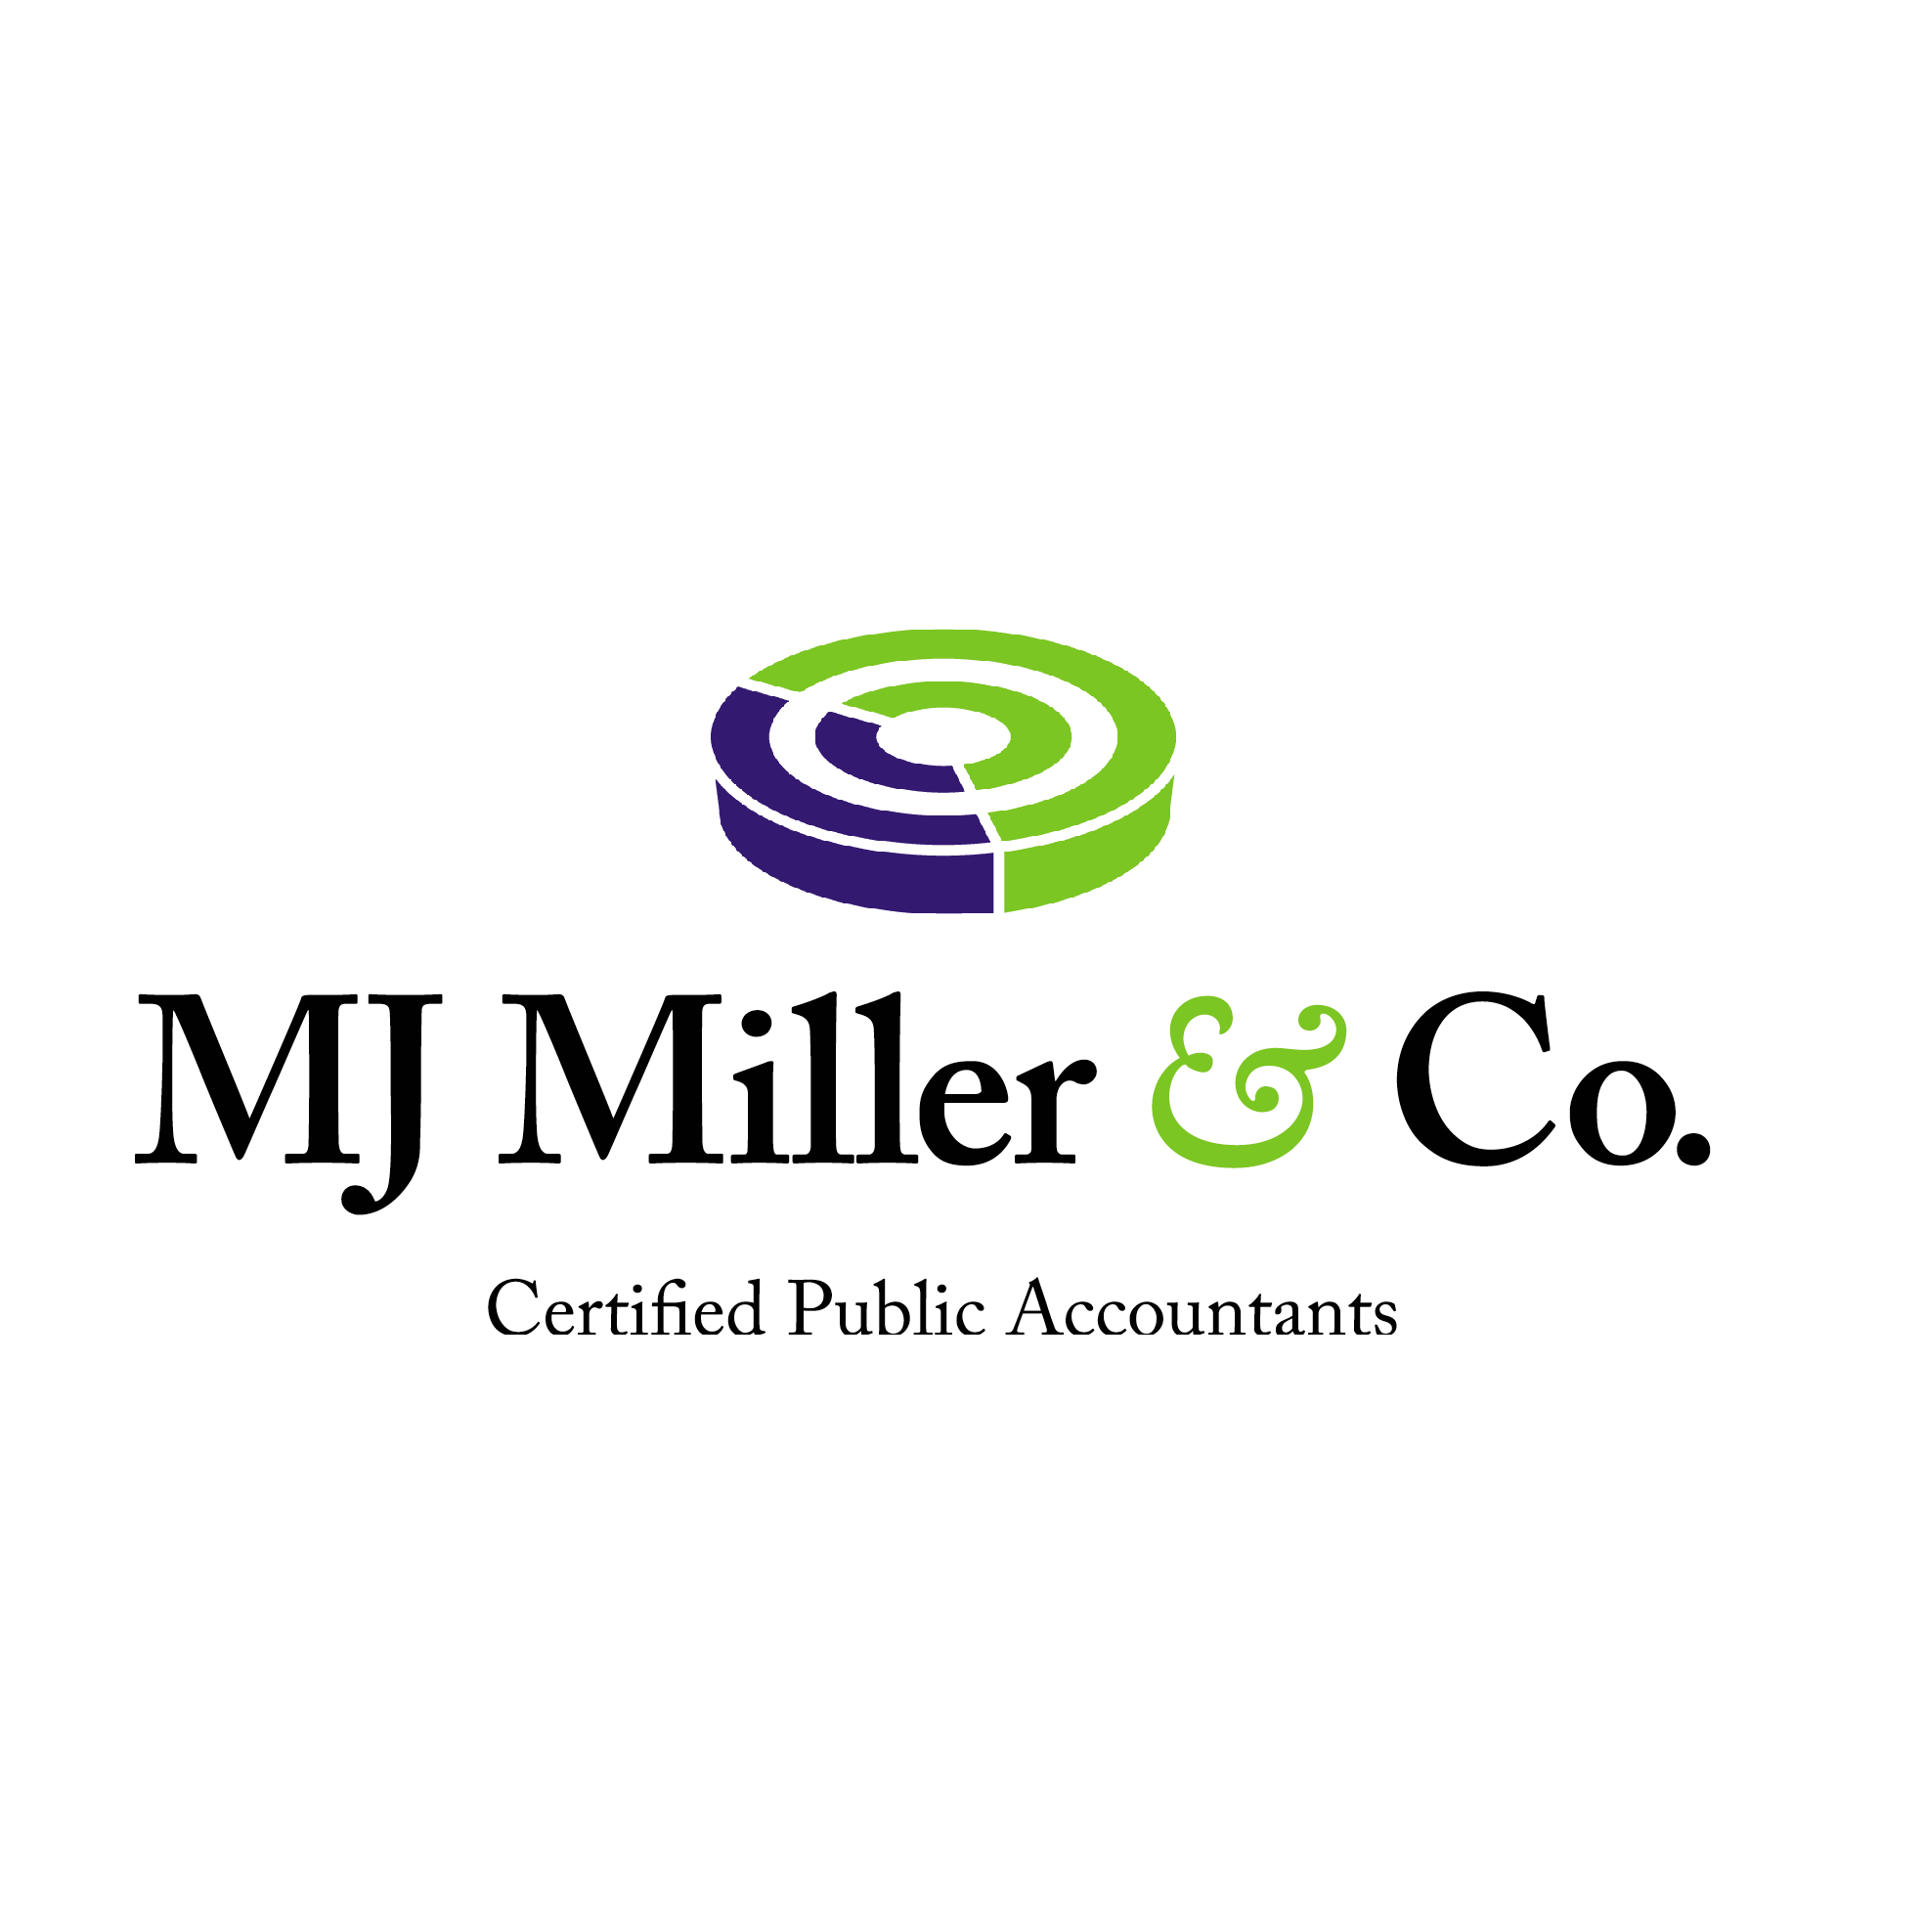 M. J. Miller & Co. CPA's 700 Prospect Ave S, Hartville Ohio 44632